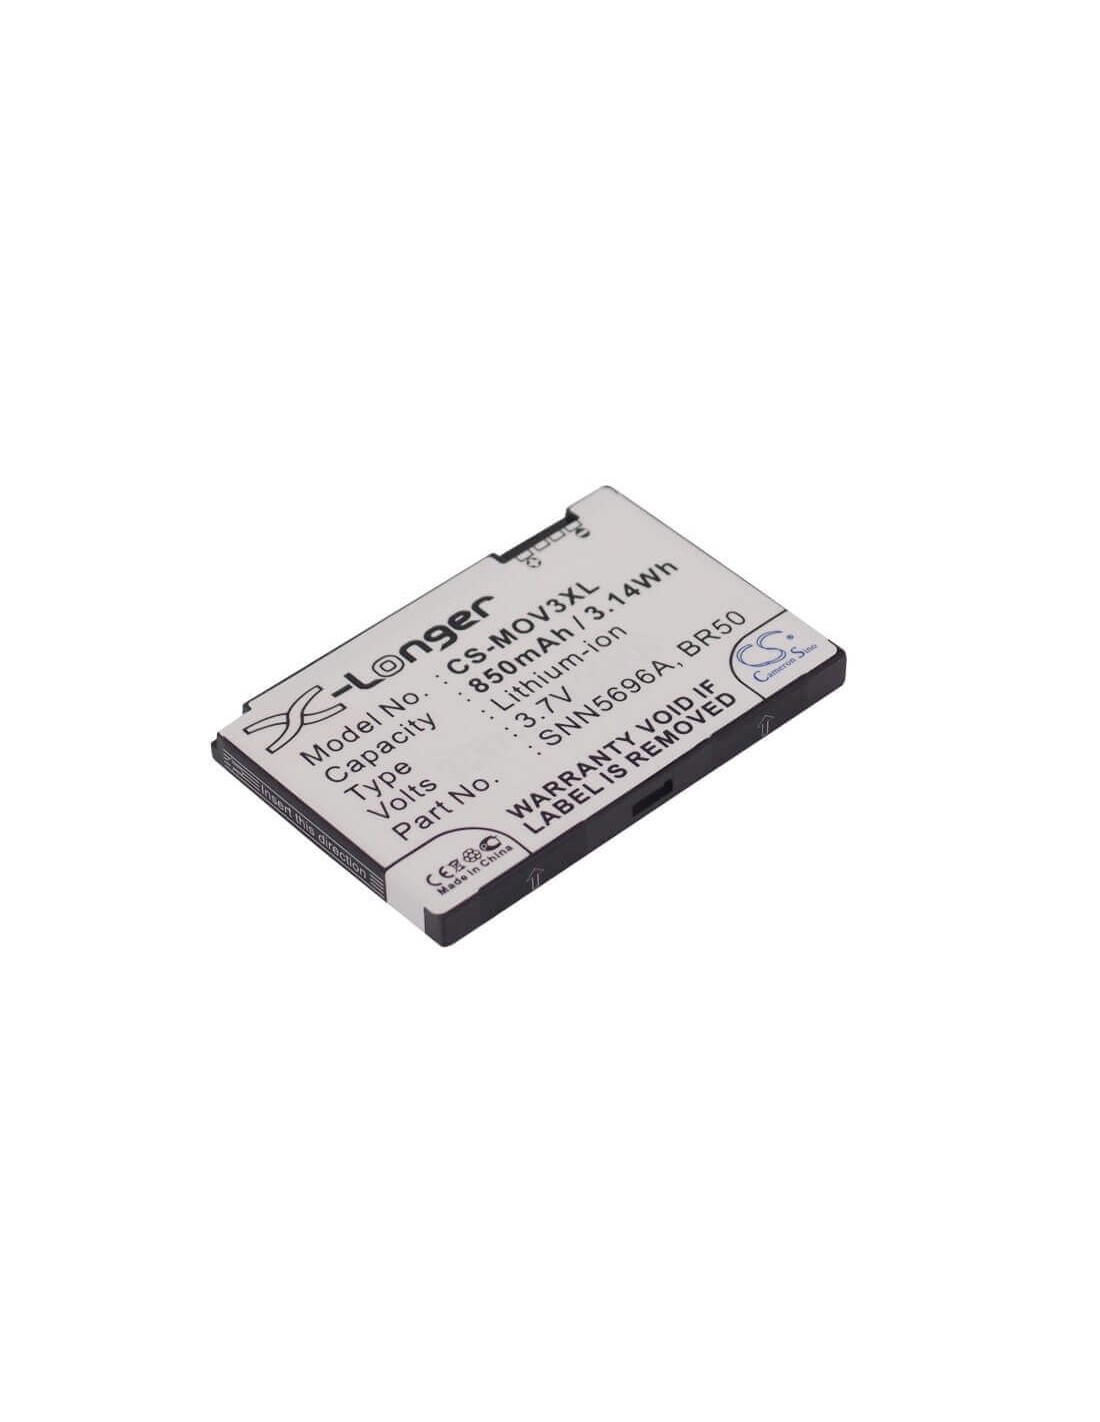 Battery for Motorola PEBL U6, Razr V3, Razr V3c 3.7V, 850mAh - 3.15Wh